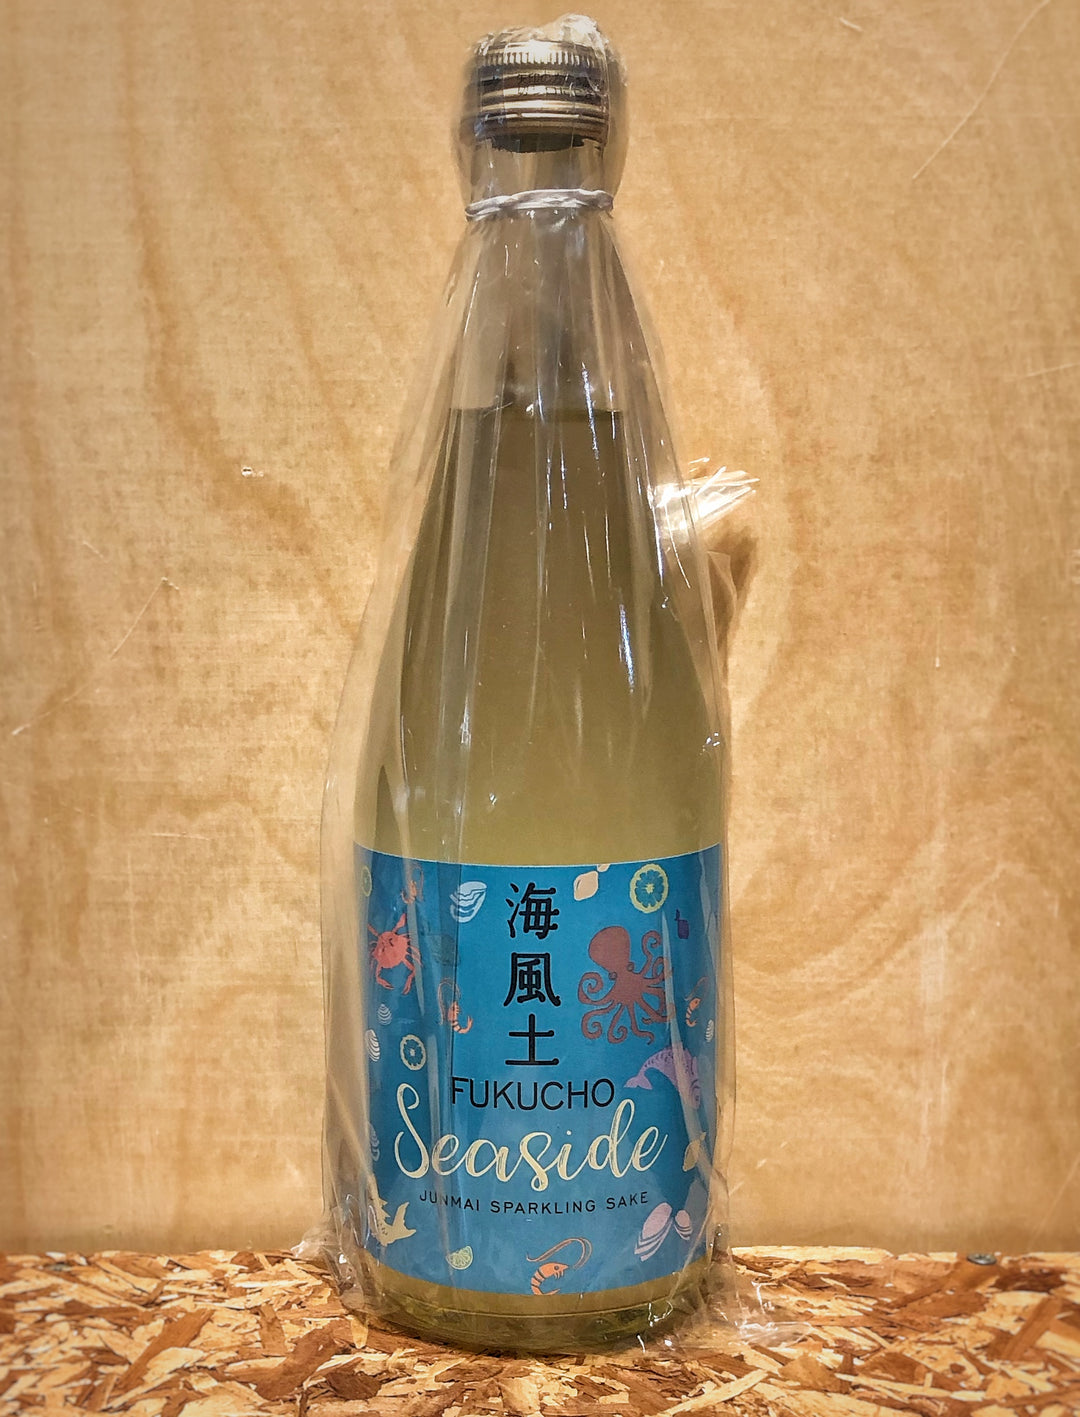 Fukucho 'Seaside' Junmai Sparkling Sake (Hiroshima, Japan)